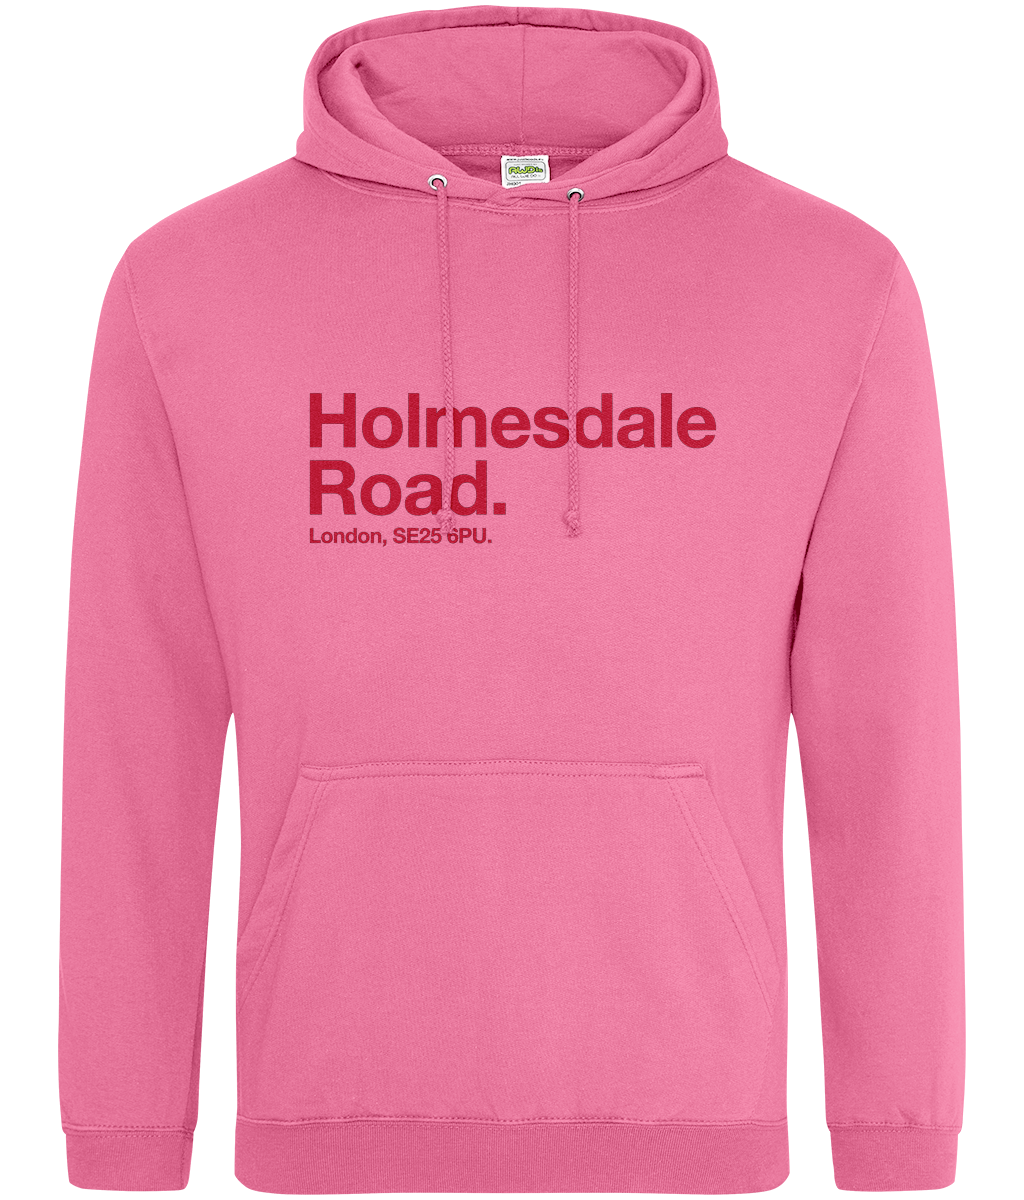 Holmesdale Road - Hoodie